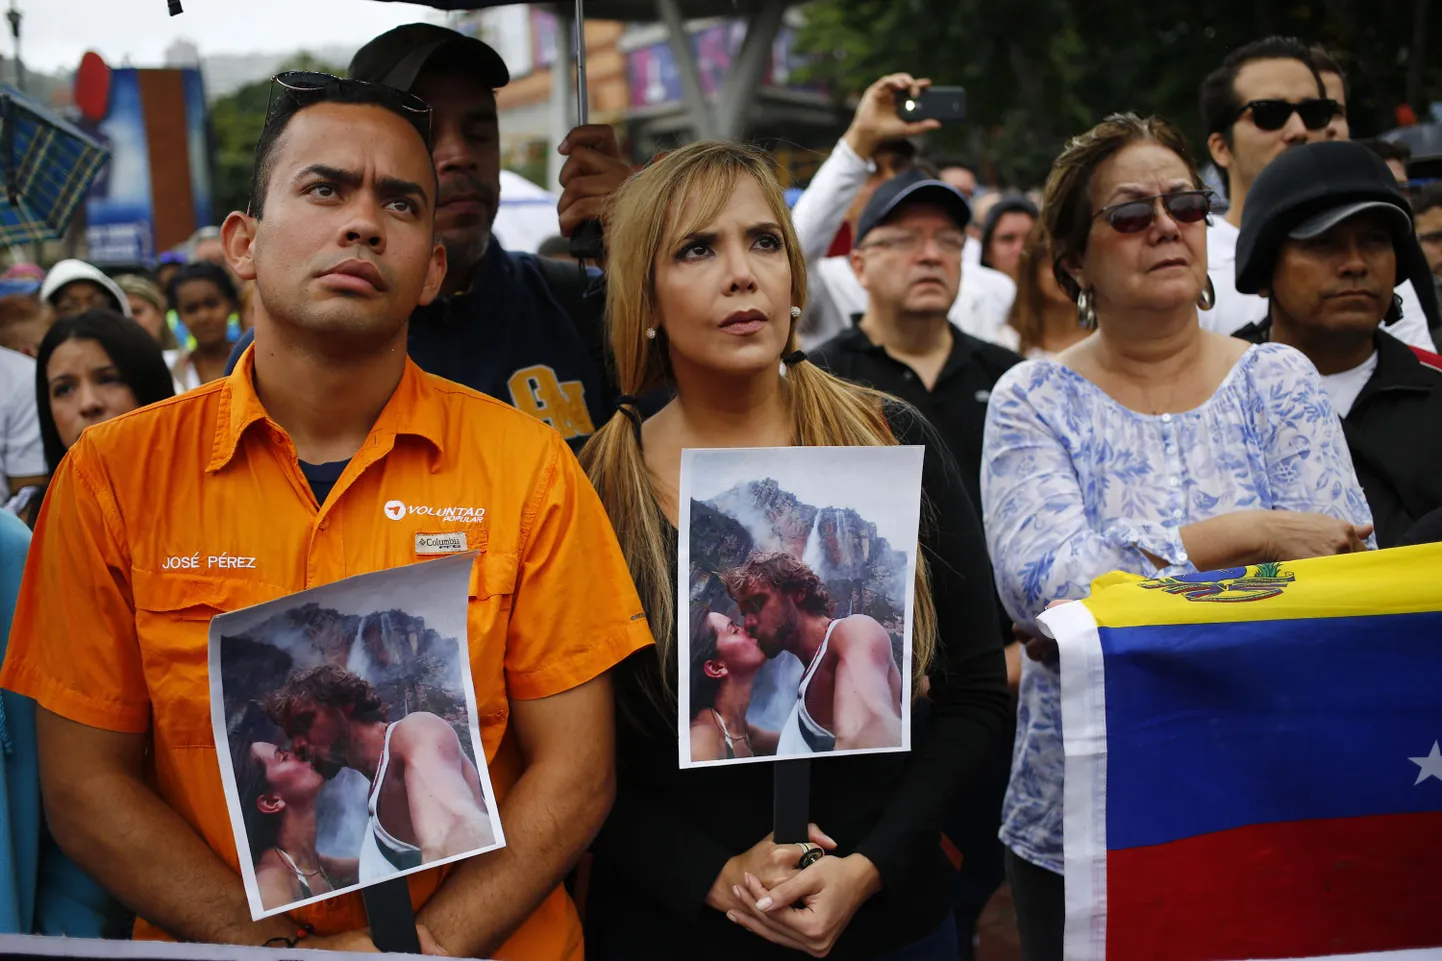 Vägivallatsemise vastu korraldatud meeleavaldus Venezuela pealinnas  Caracases 8. jaanuaril. Inimesed hoidsid käes jõhkralt mõrvatud Mónica Speari ja Thomas Berry fotosid.